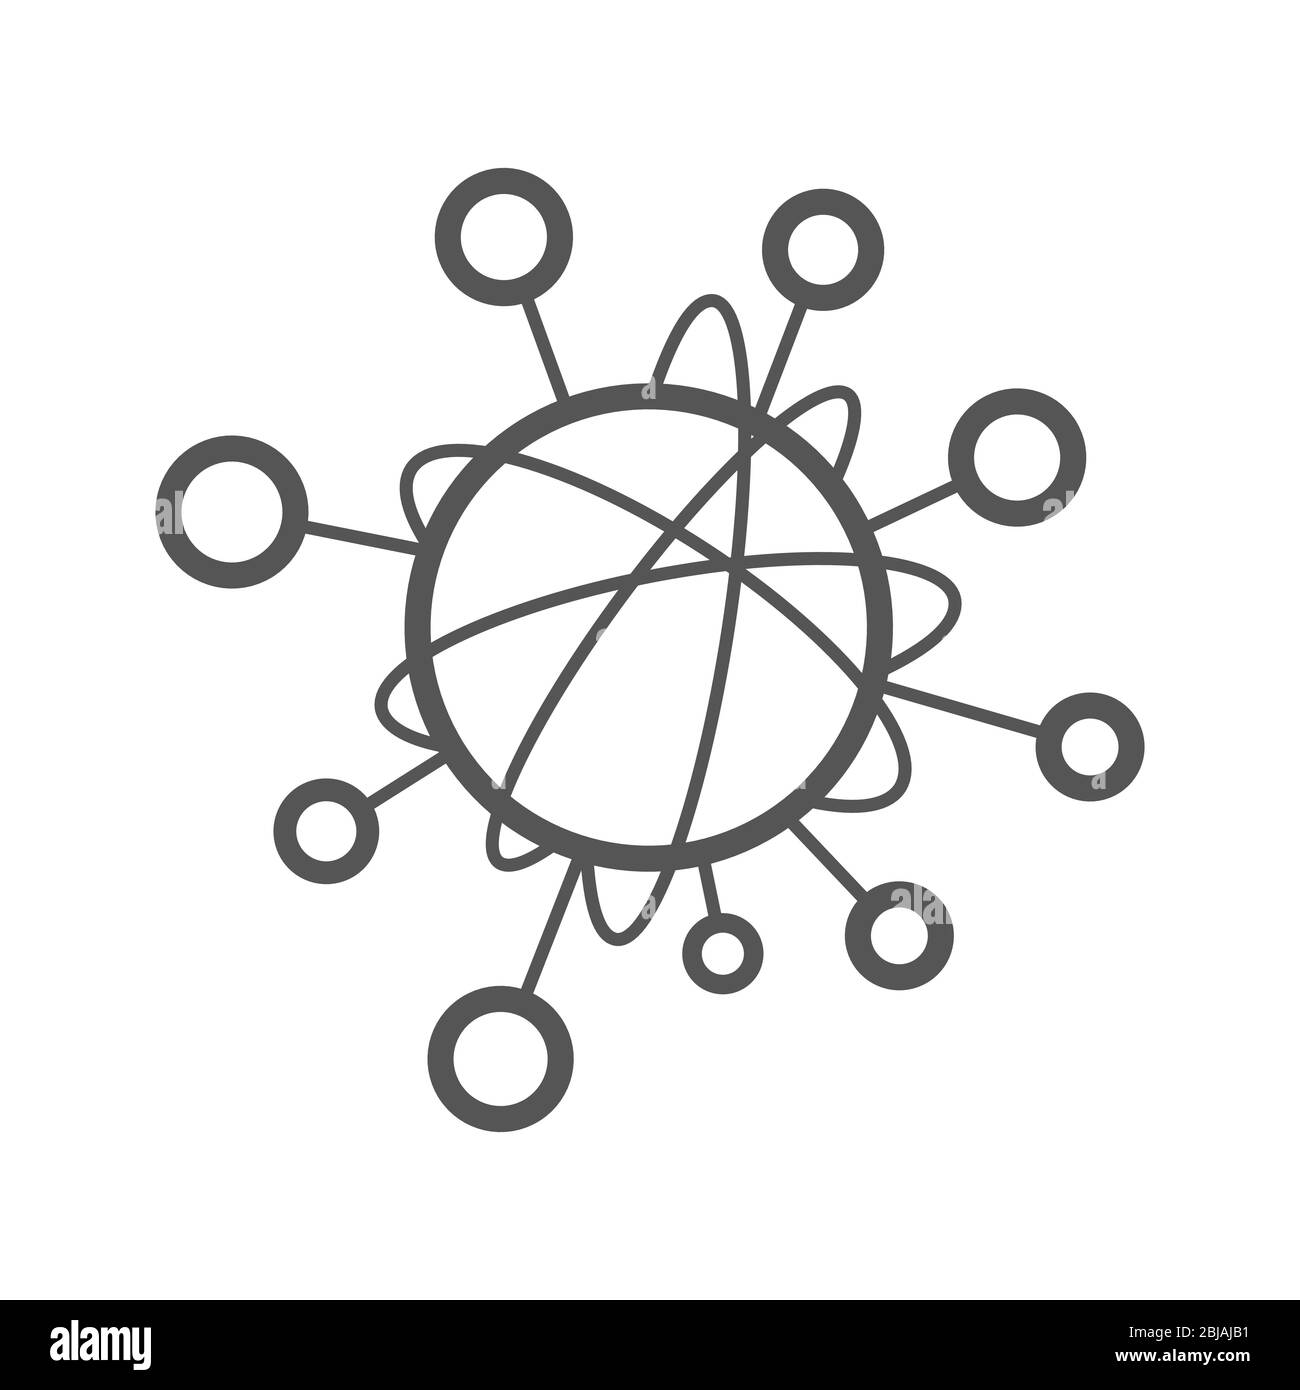 Icono de línea simple para representar el concepto de Internet de las cosas IoT. Una red de objetos, como dispositivos conectados entre sí en Internet Ilustración del Vector